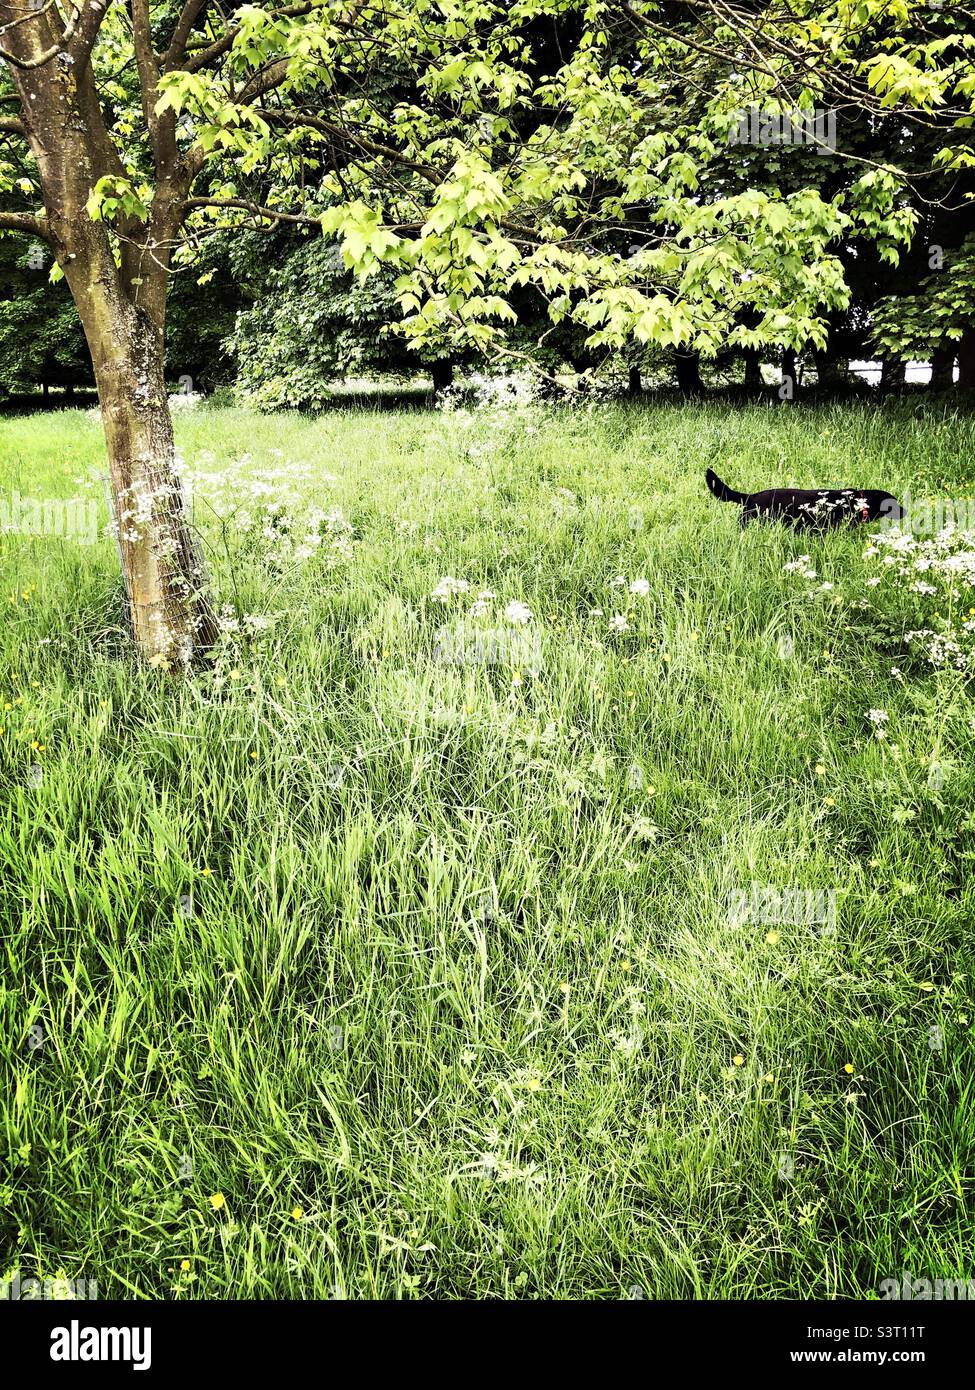 Black Labrador cane camminare in erba lunga. Regno Unito Foto Stock